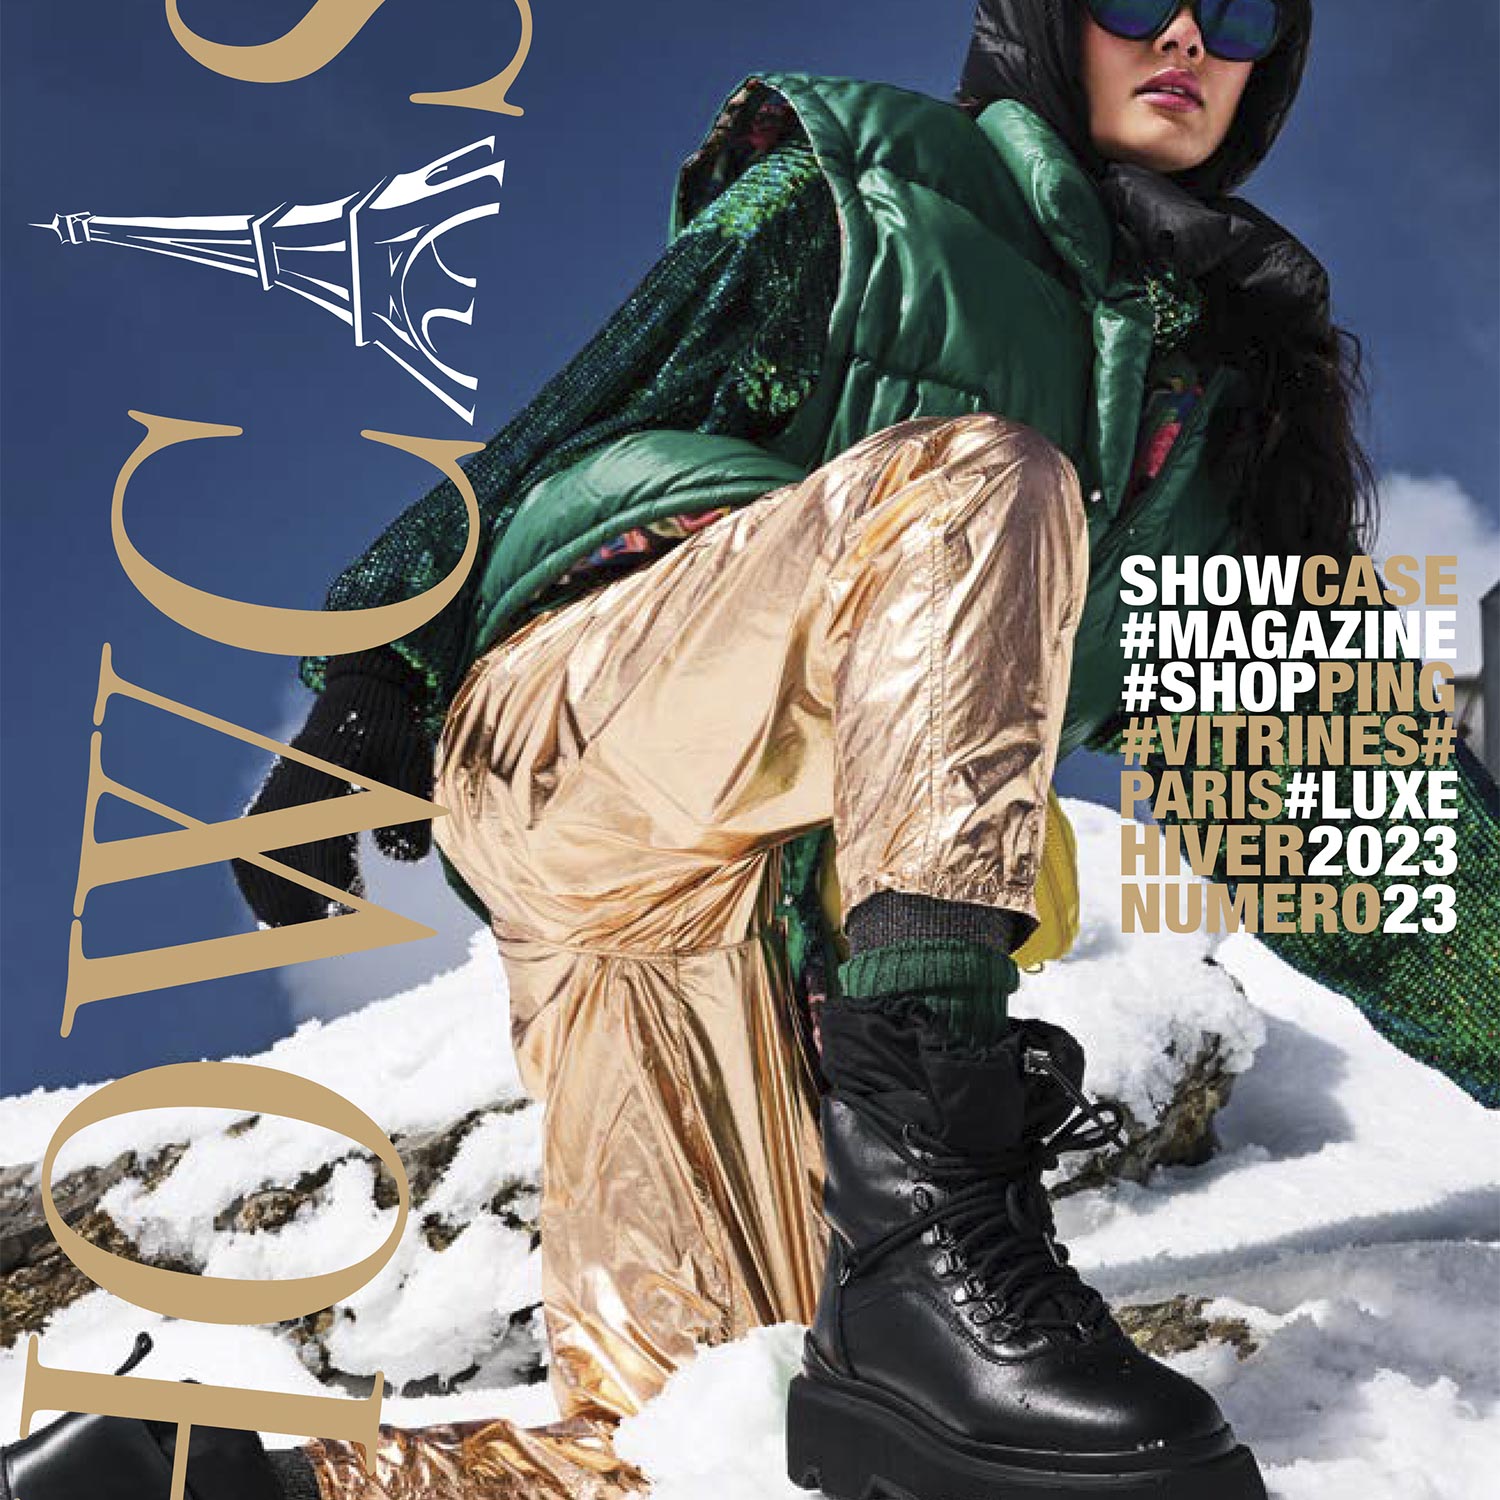 couverture de magazine showcase avec une femme au ski